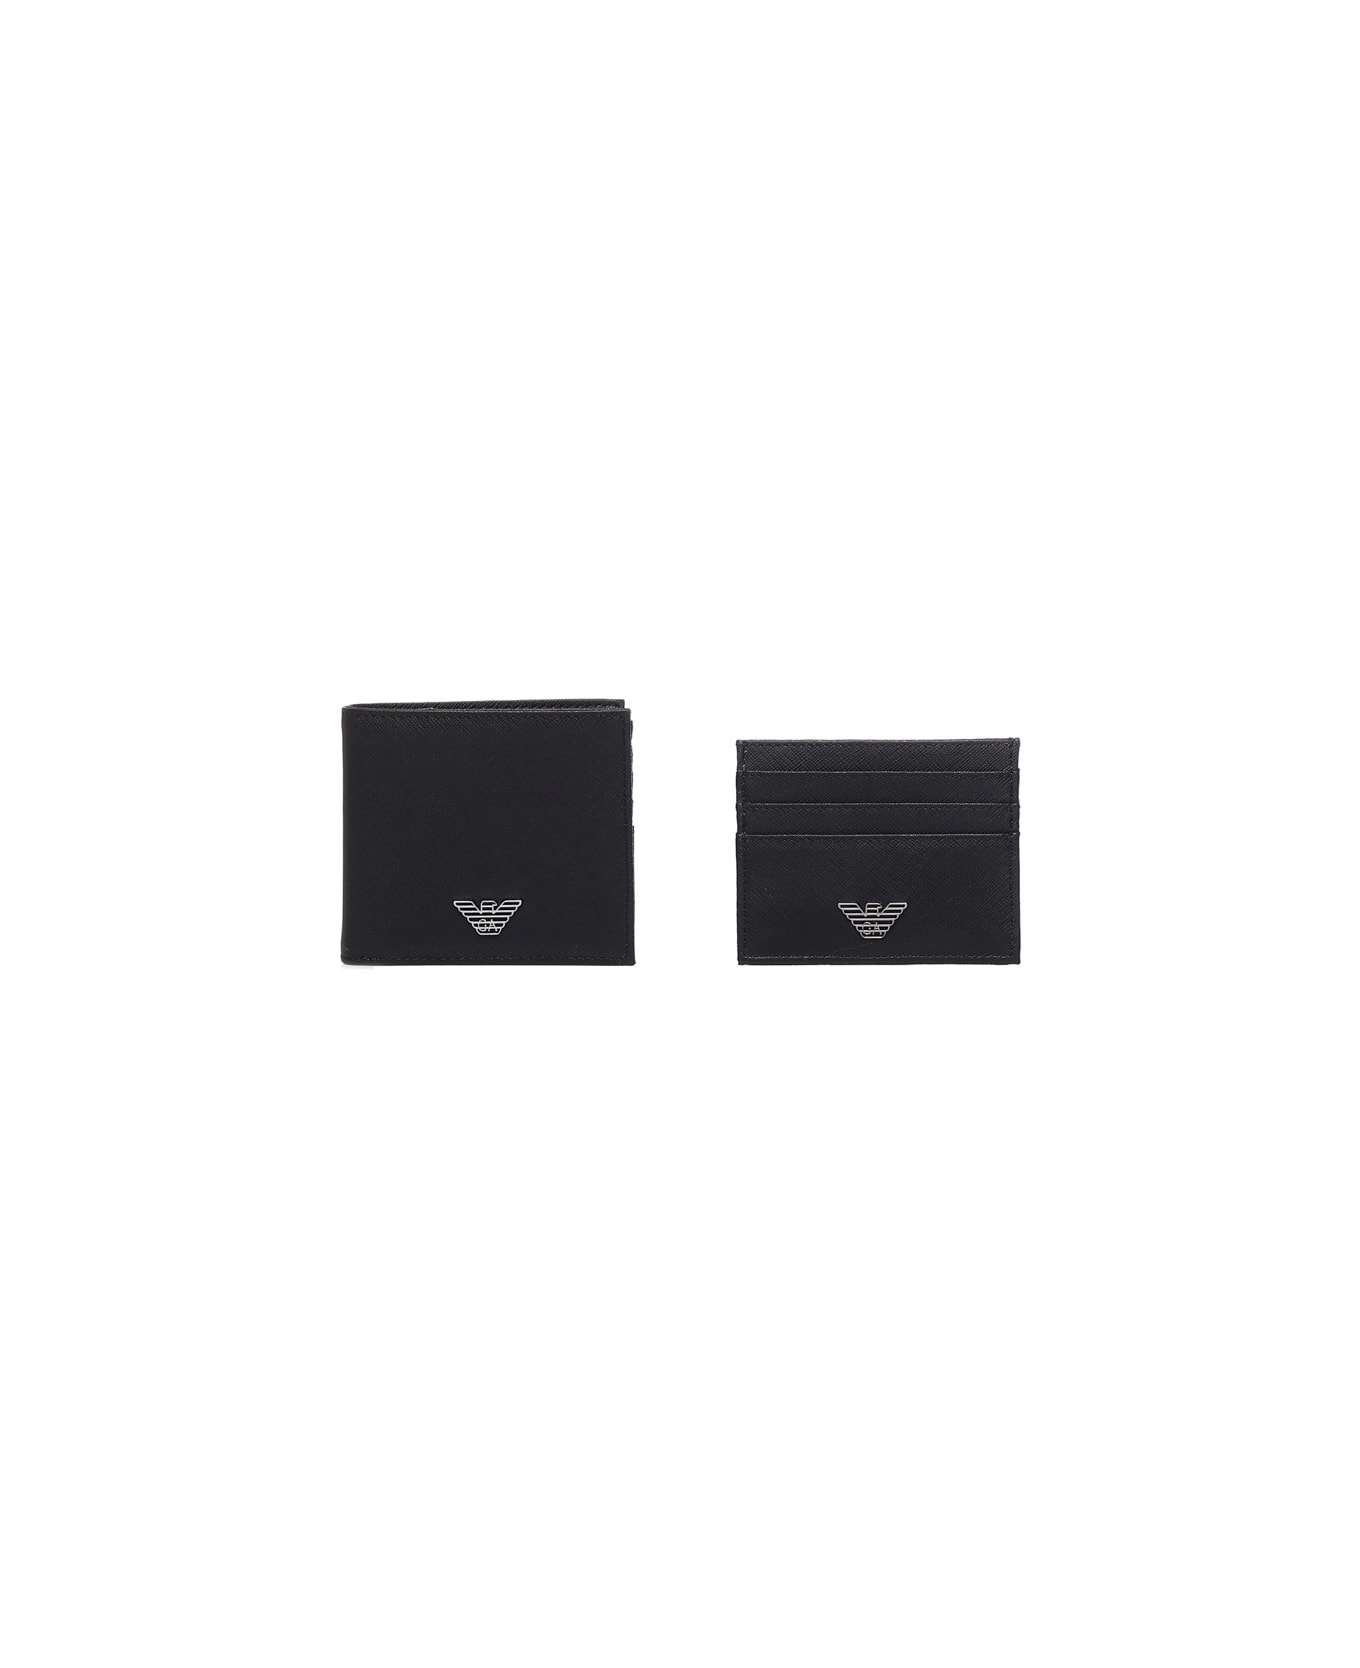 Emporio Armani Wallet With Application - Black 財布